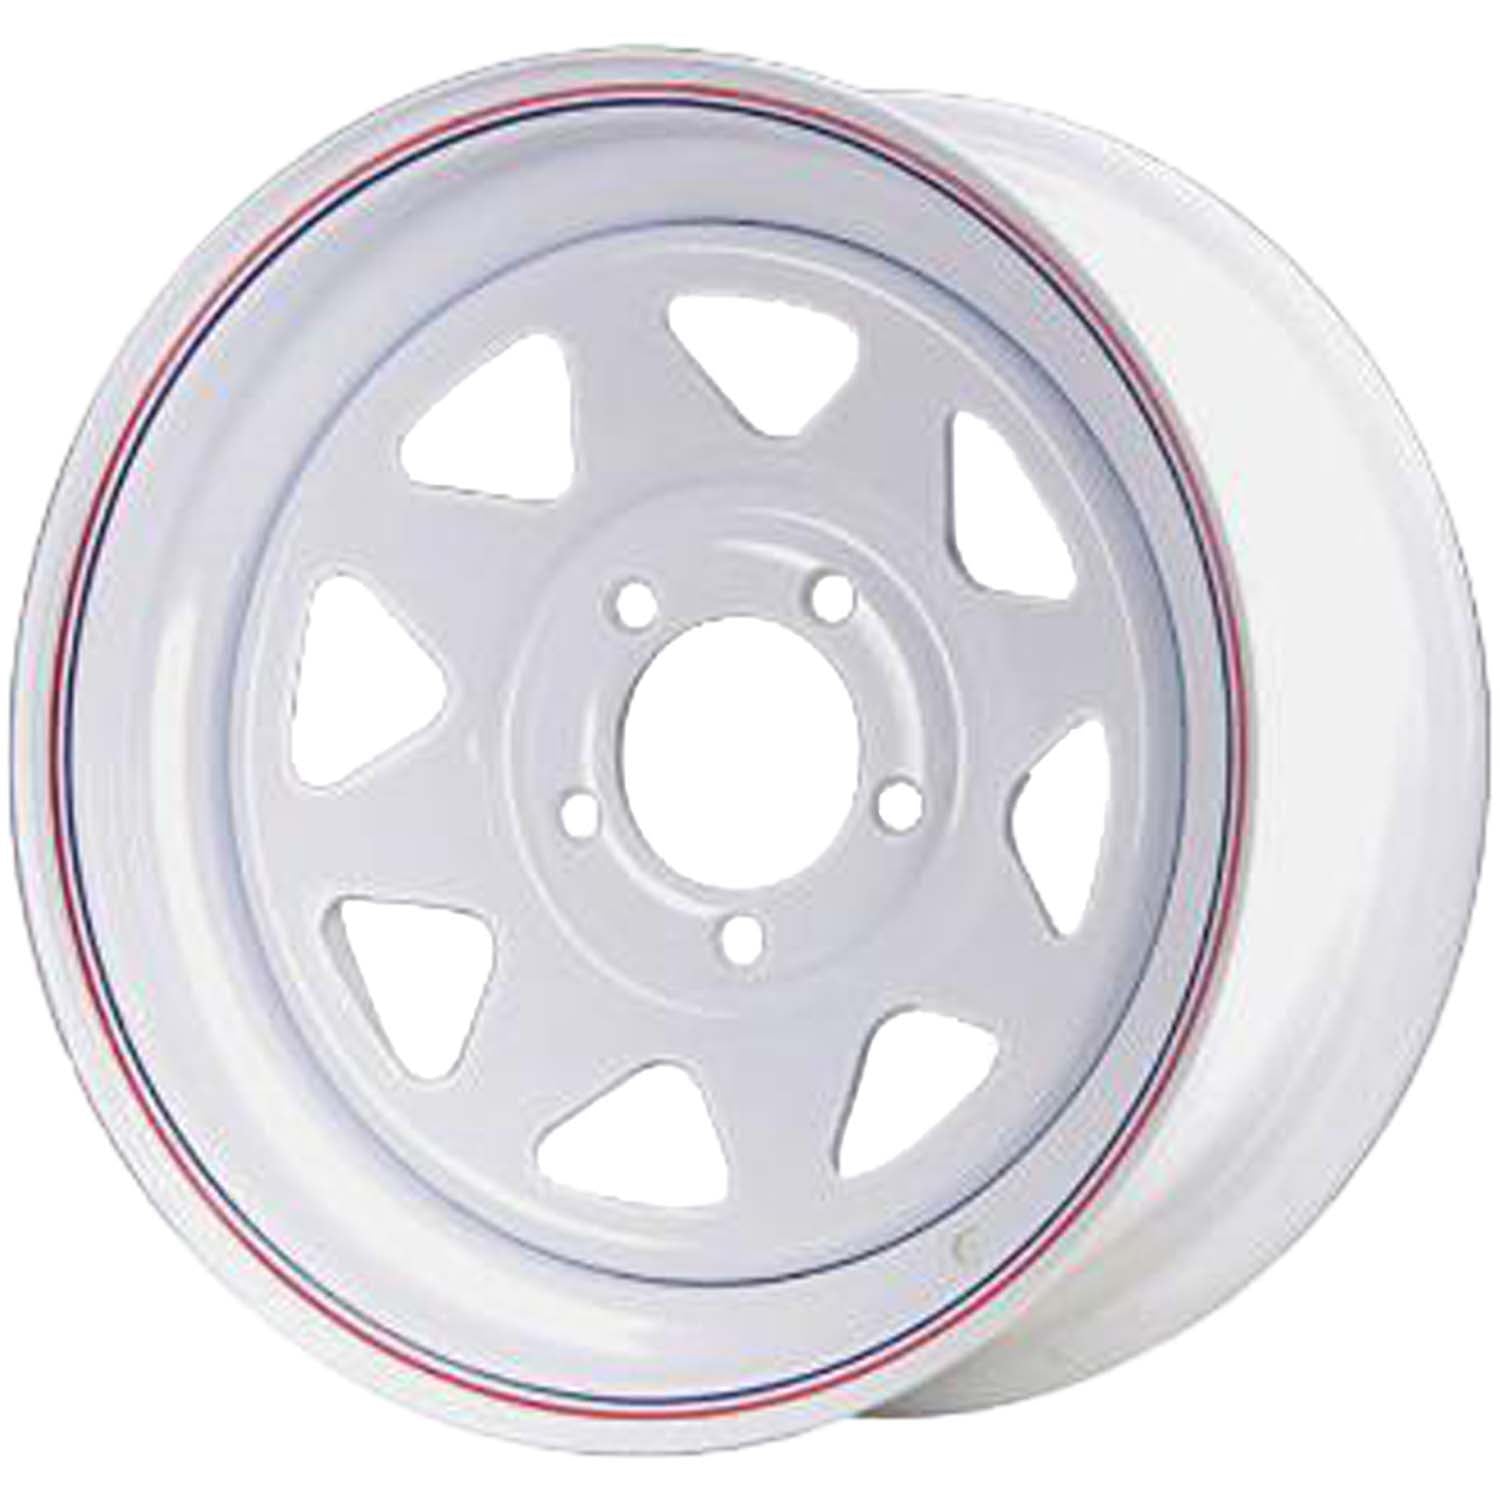 Premium Service 13x4.5 5 On 4.5 Spoked Trailer Wheel - White with Pin Stripes